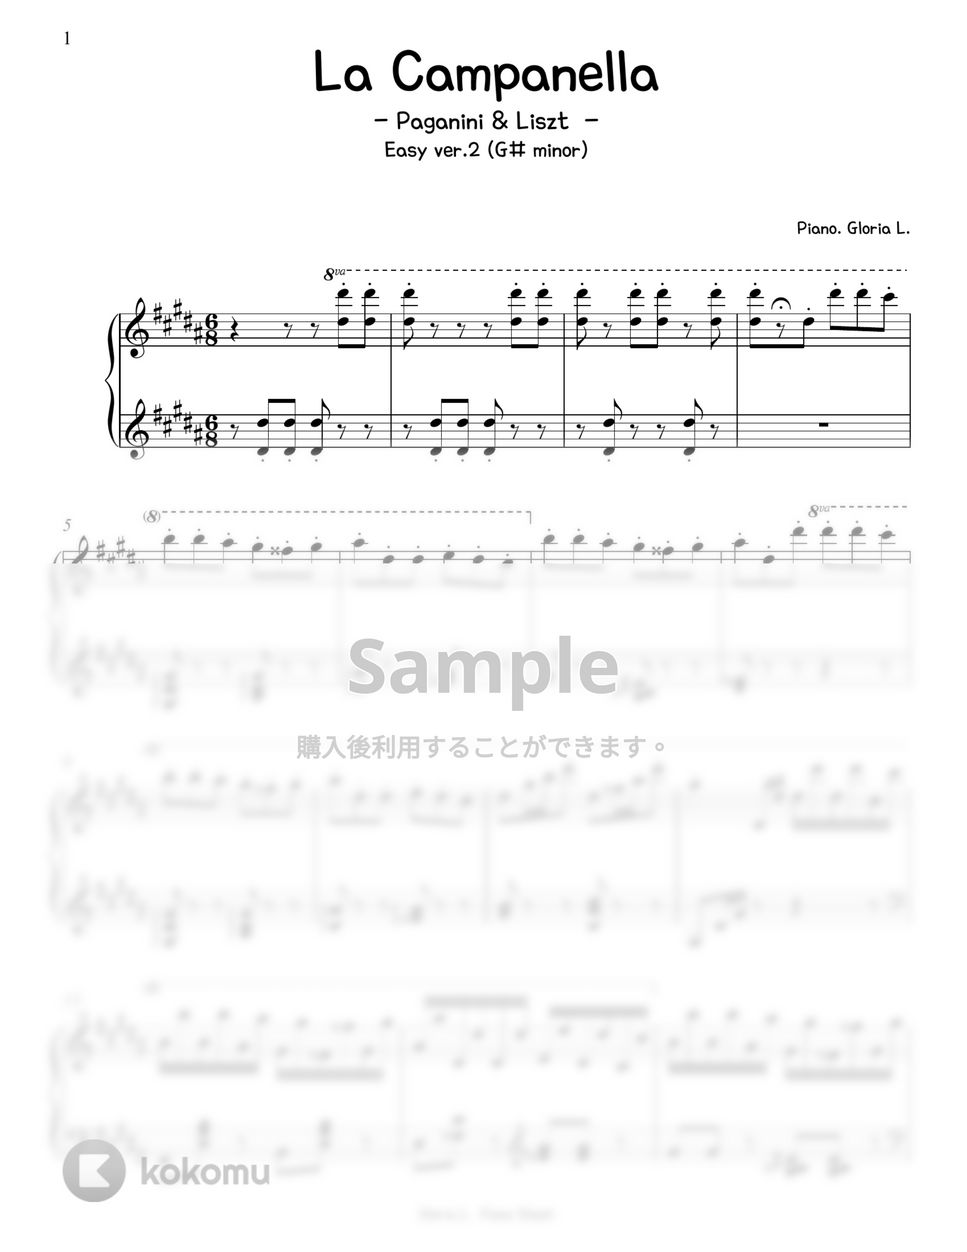 F. Liszt - La Campanella (Easy ver. G# minor) by Gloria L.